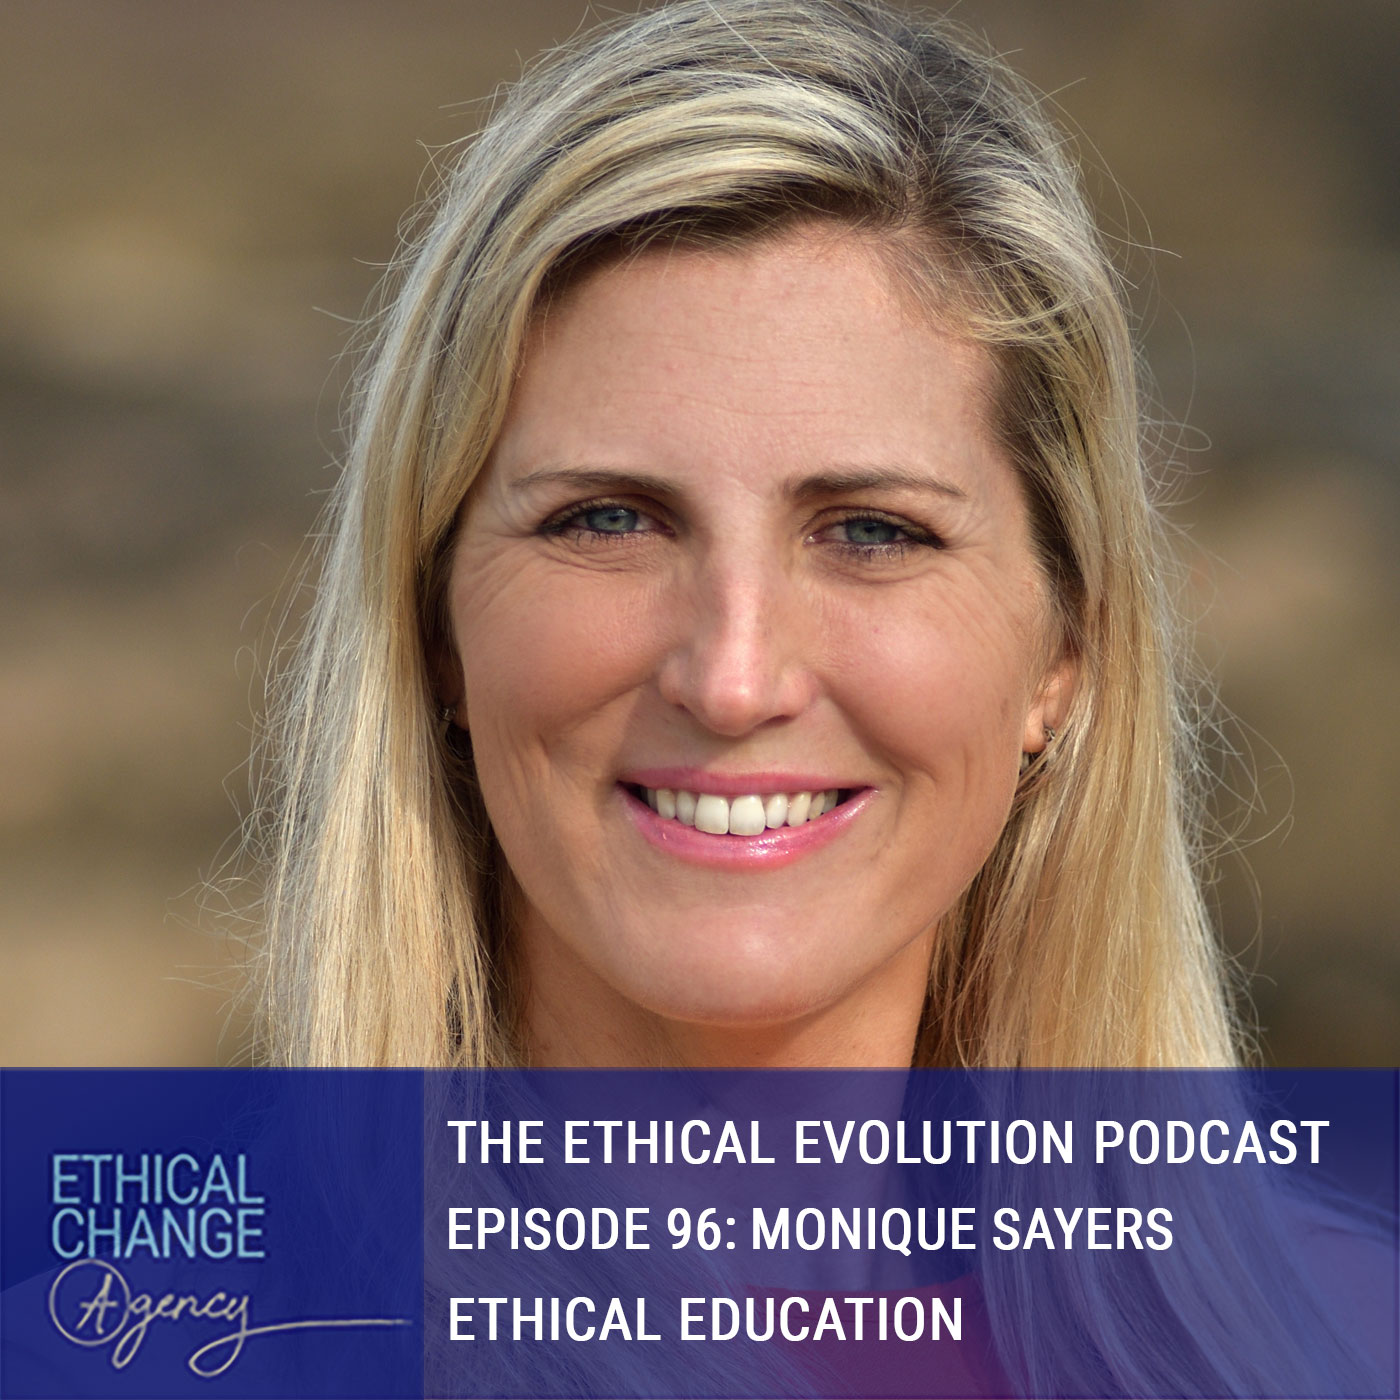 Artwork for podcast The Ethical Evolution Podcast